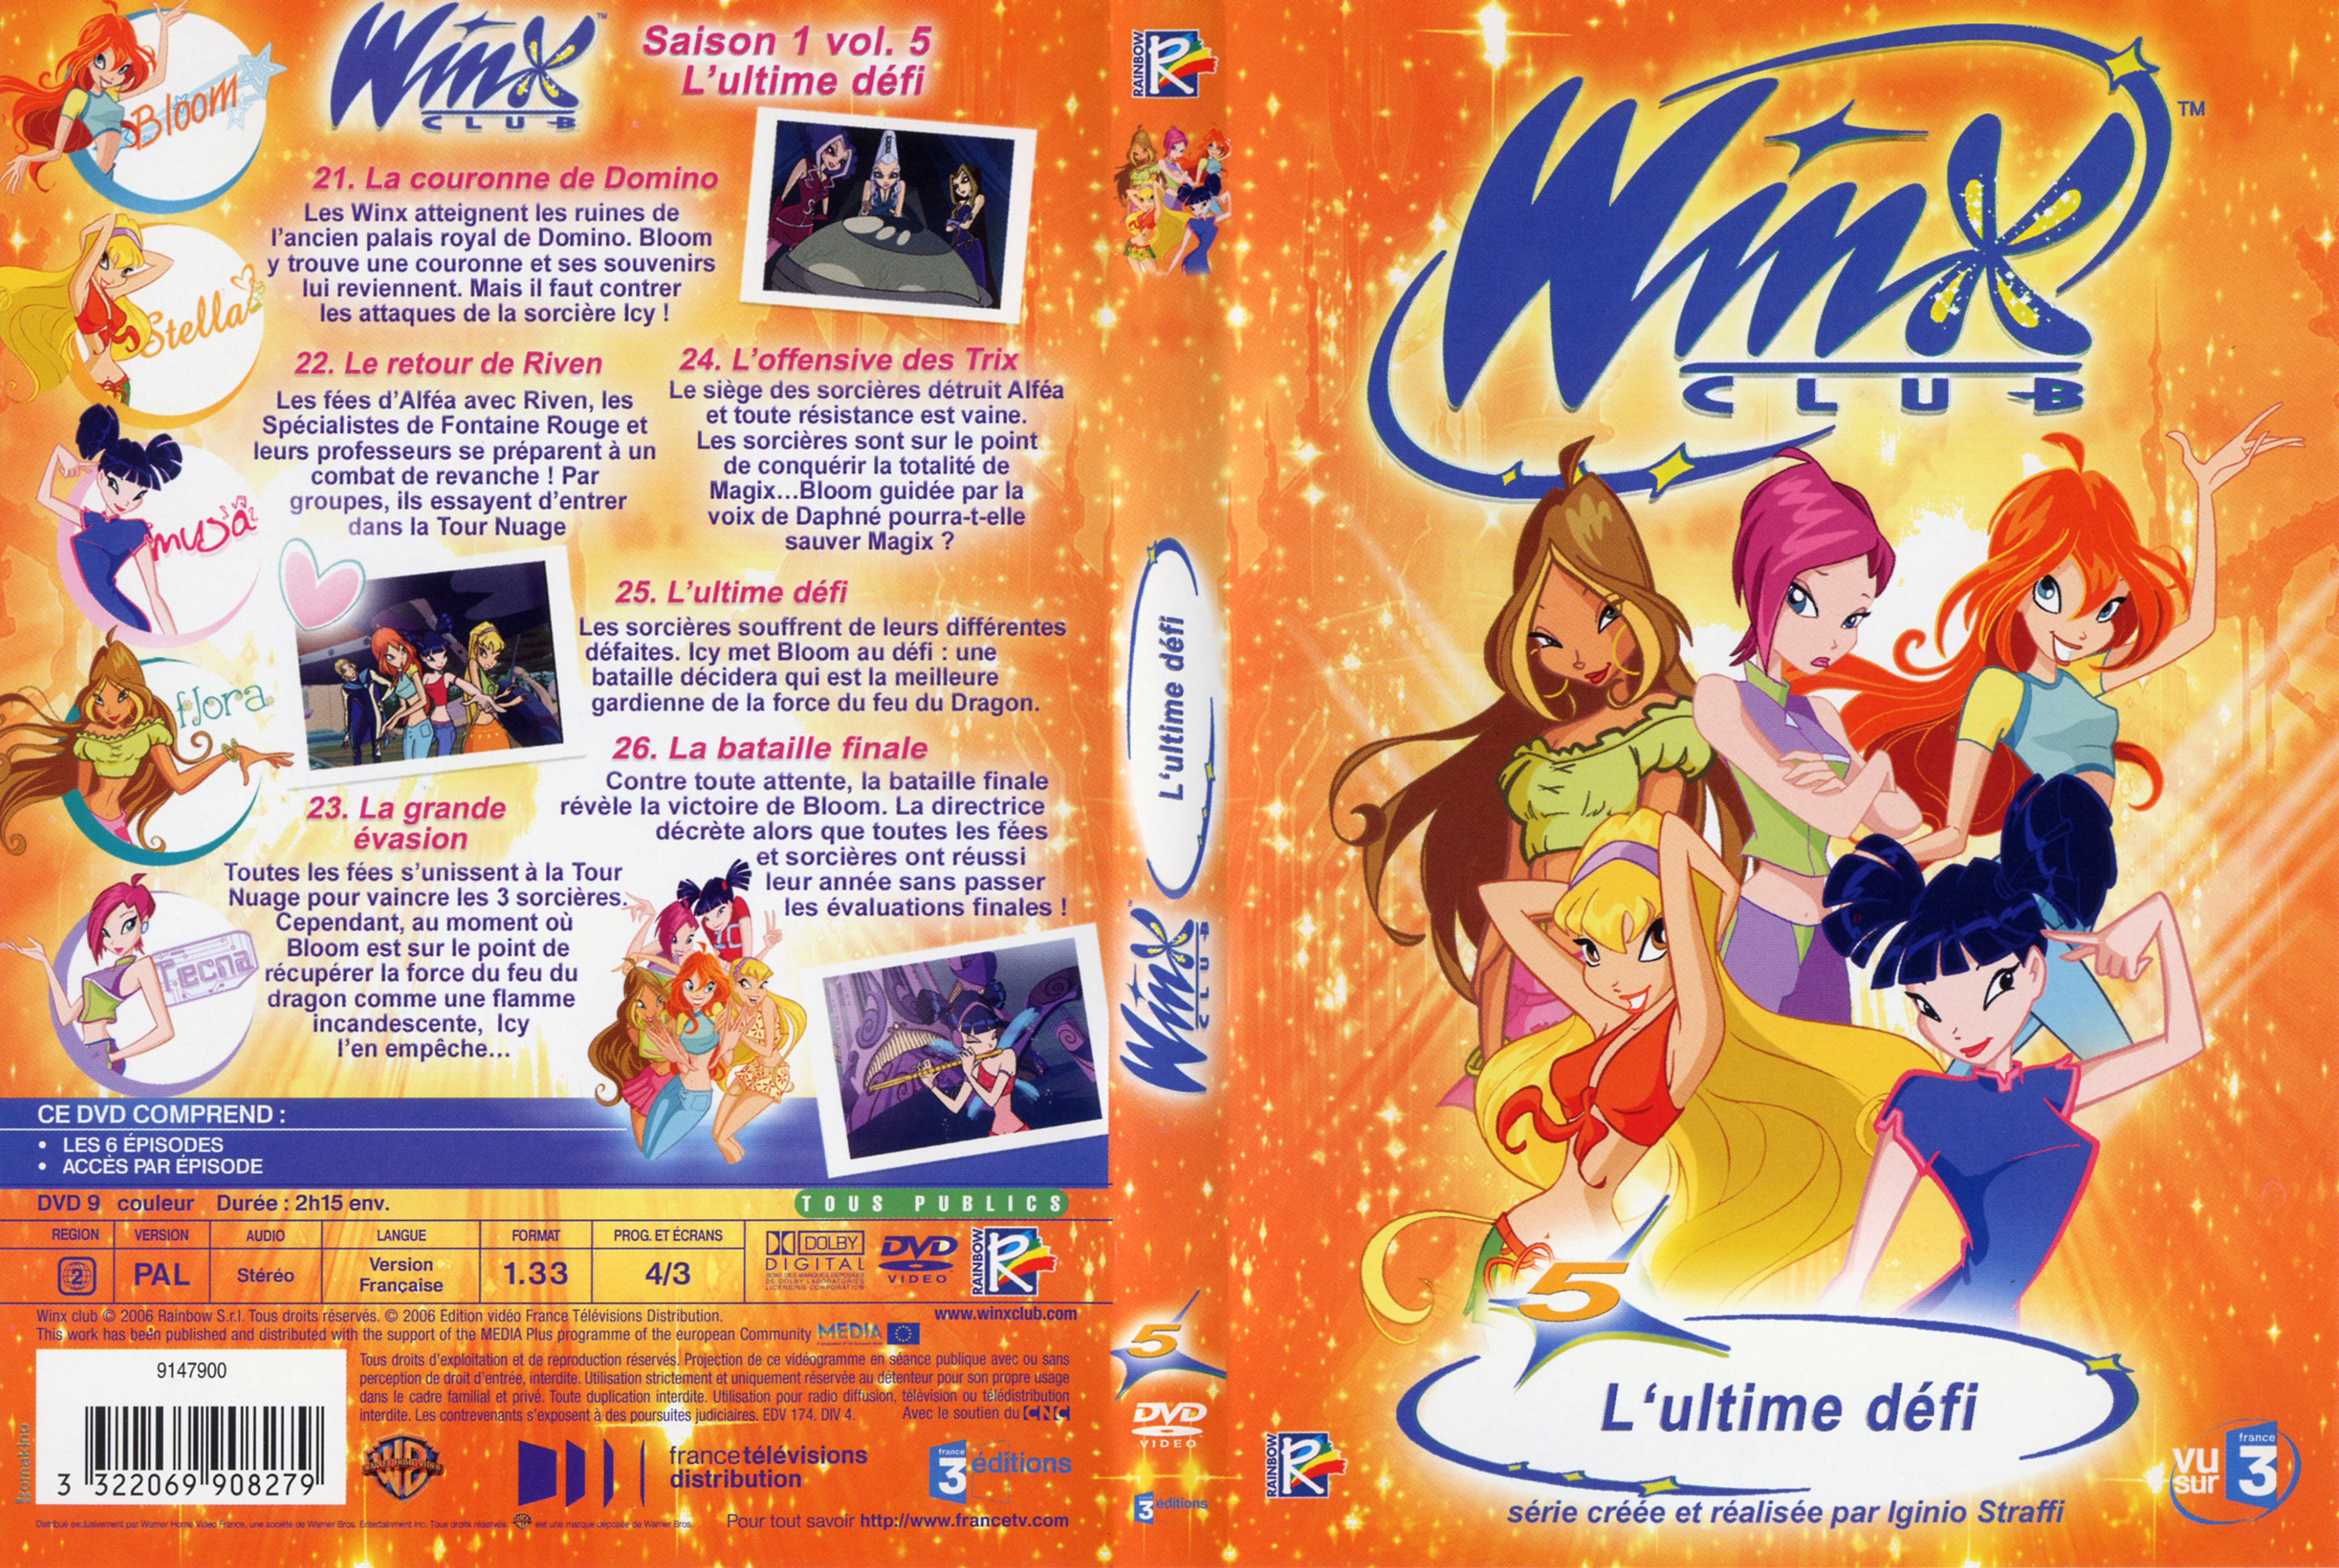 Jaquette DVD Winx club saison 1 vol 5